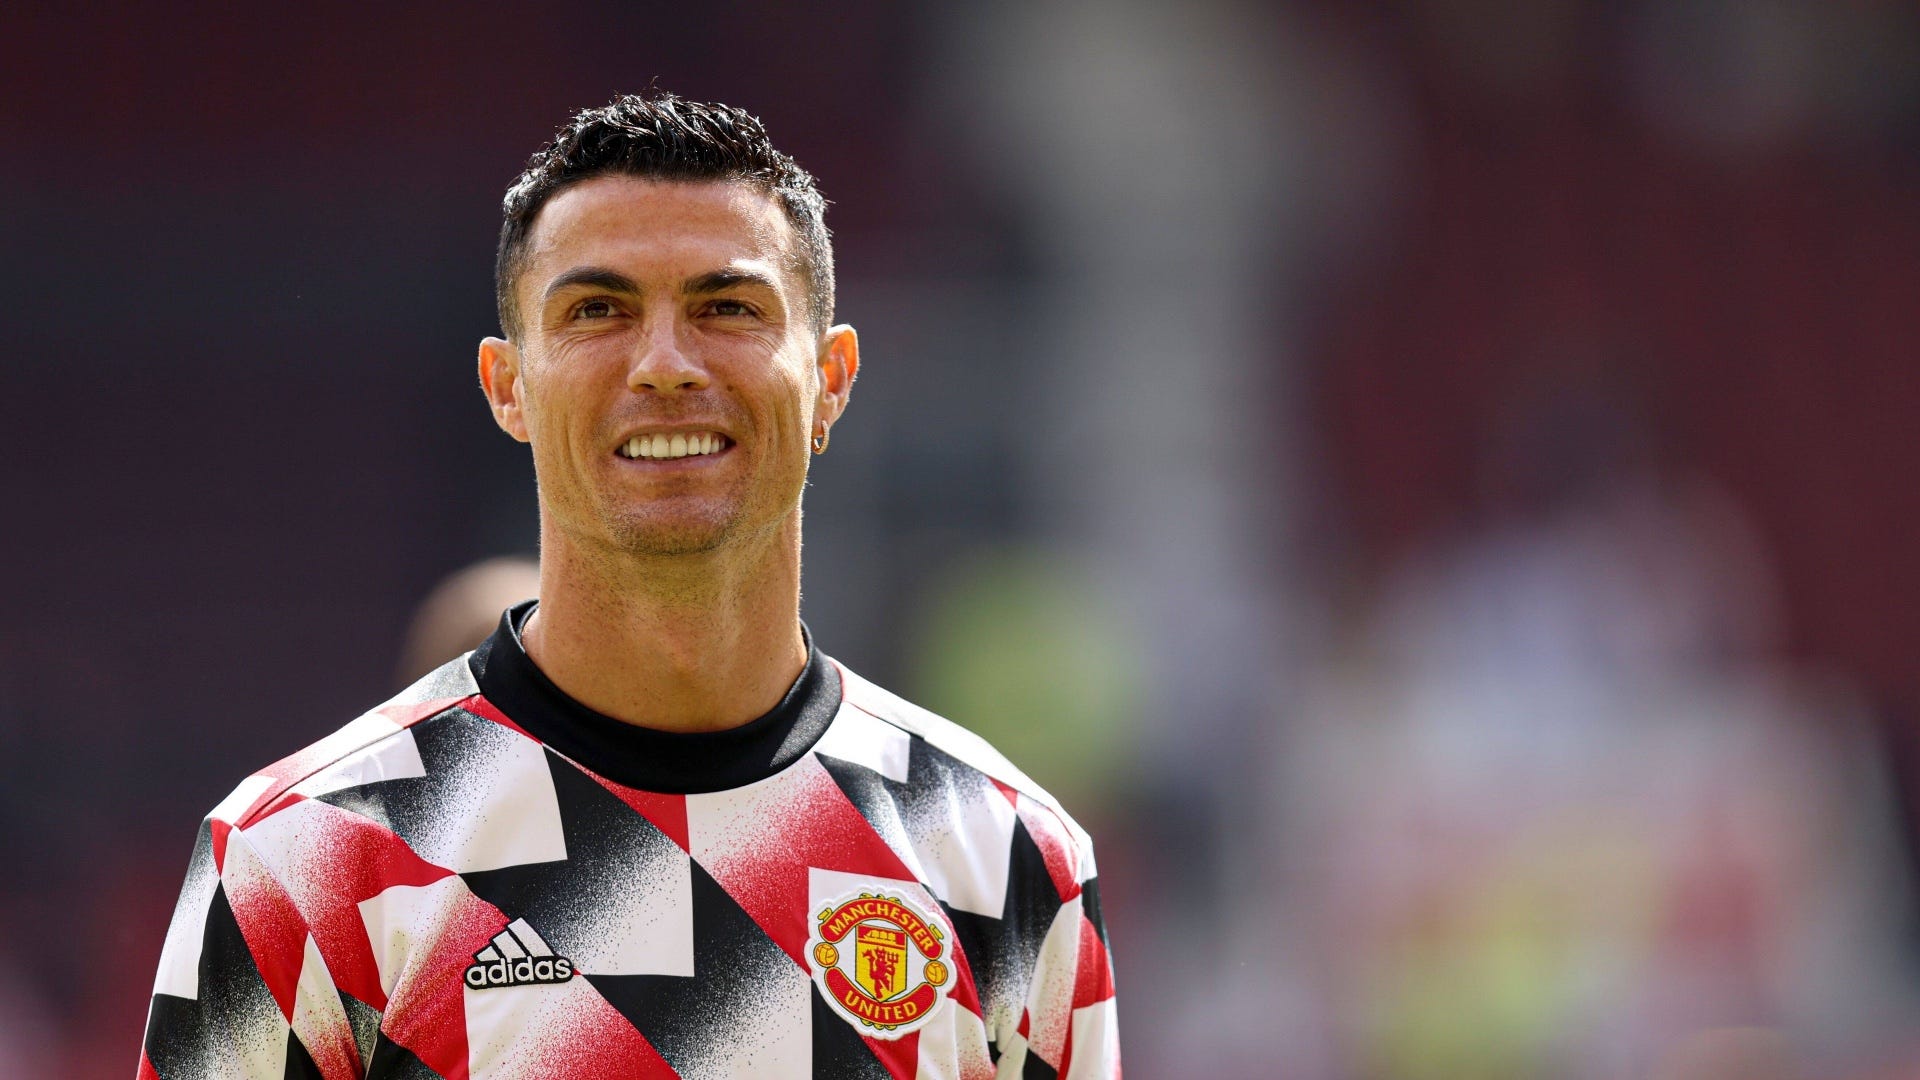 Cristiano Ronaldo zum BVB? Berater will Borussia Dortmund wohl zu Angebot überreden | Goal.com Deutschland